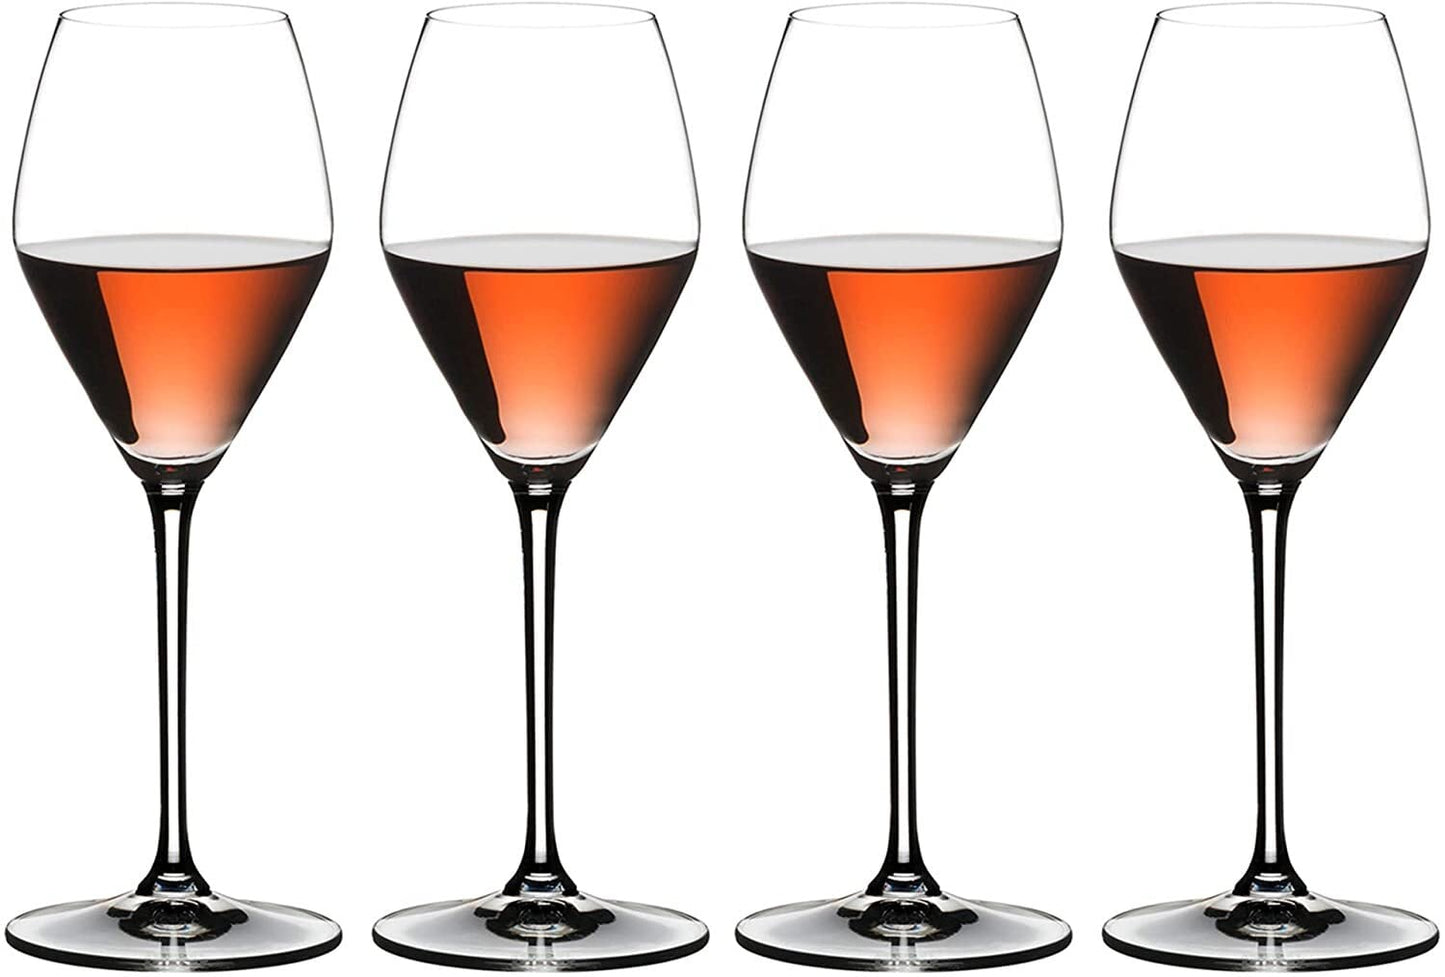 RIEDEL リーデル シャンパン グラス 4個セット エクストリーム ロゼ・シャンパーニュ/ロゼワイン 322ml 4411/55